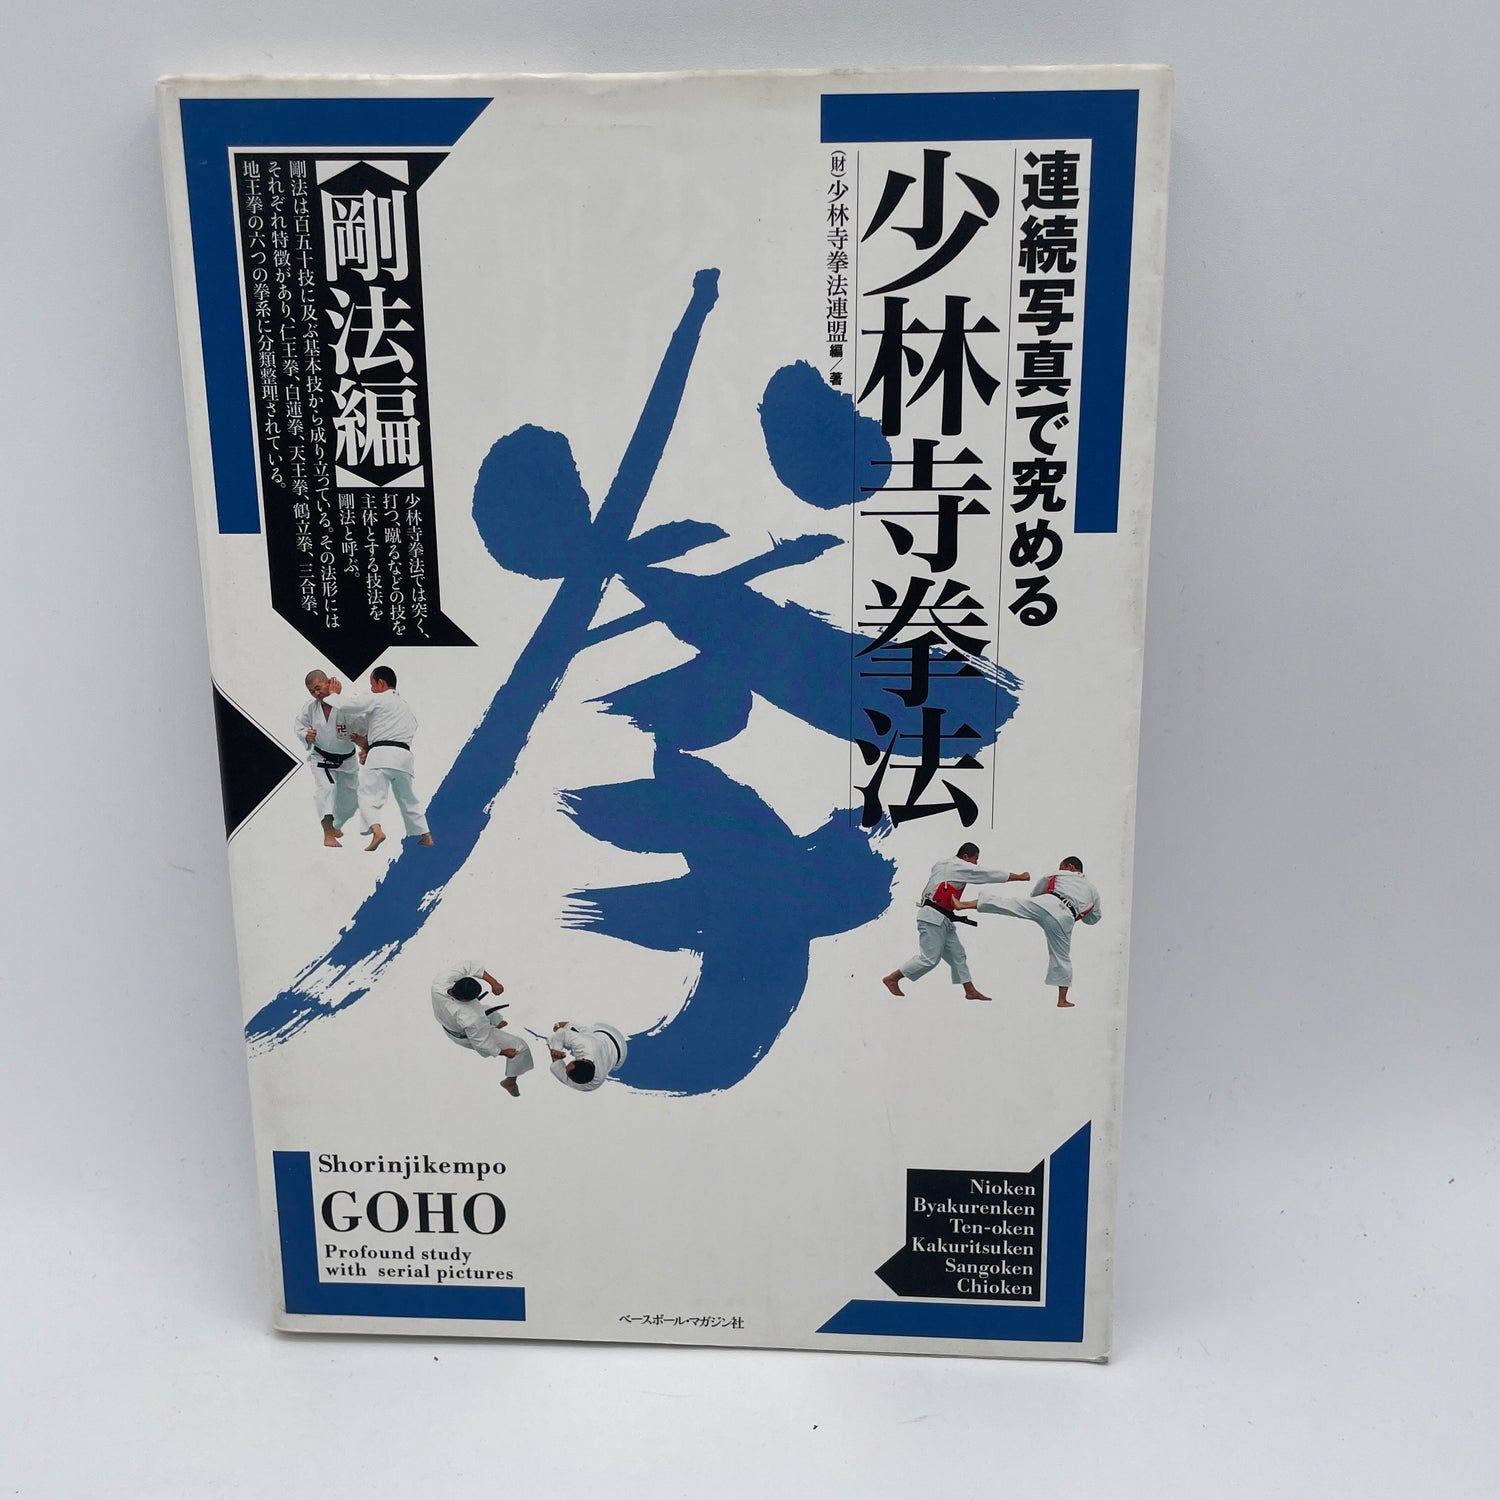 Shorinji Kempo Goho Book (Preowned)